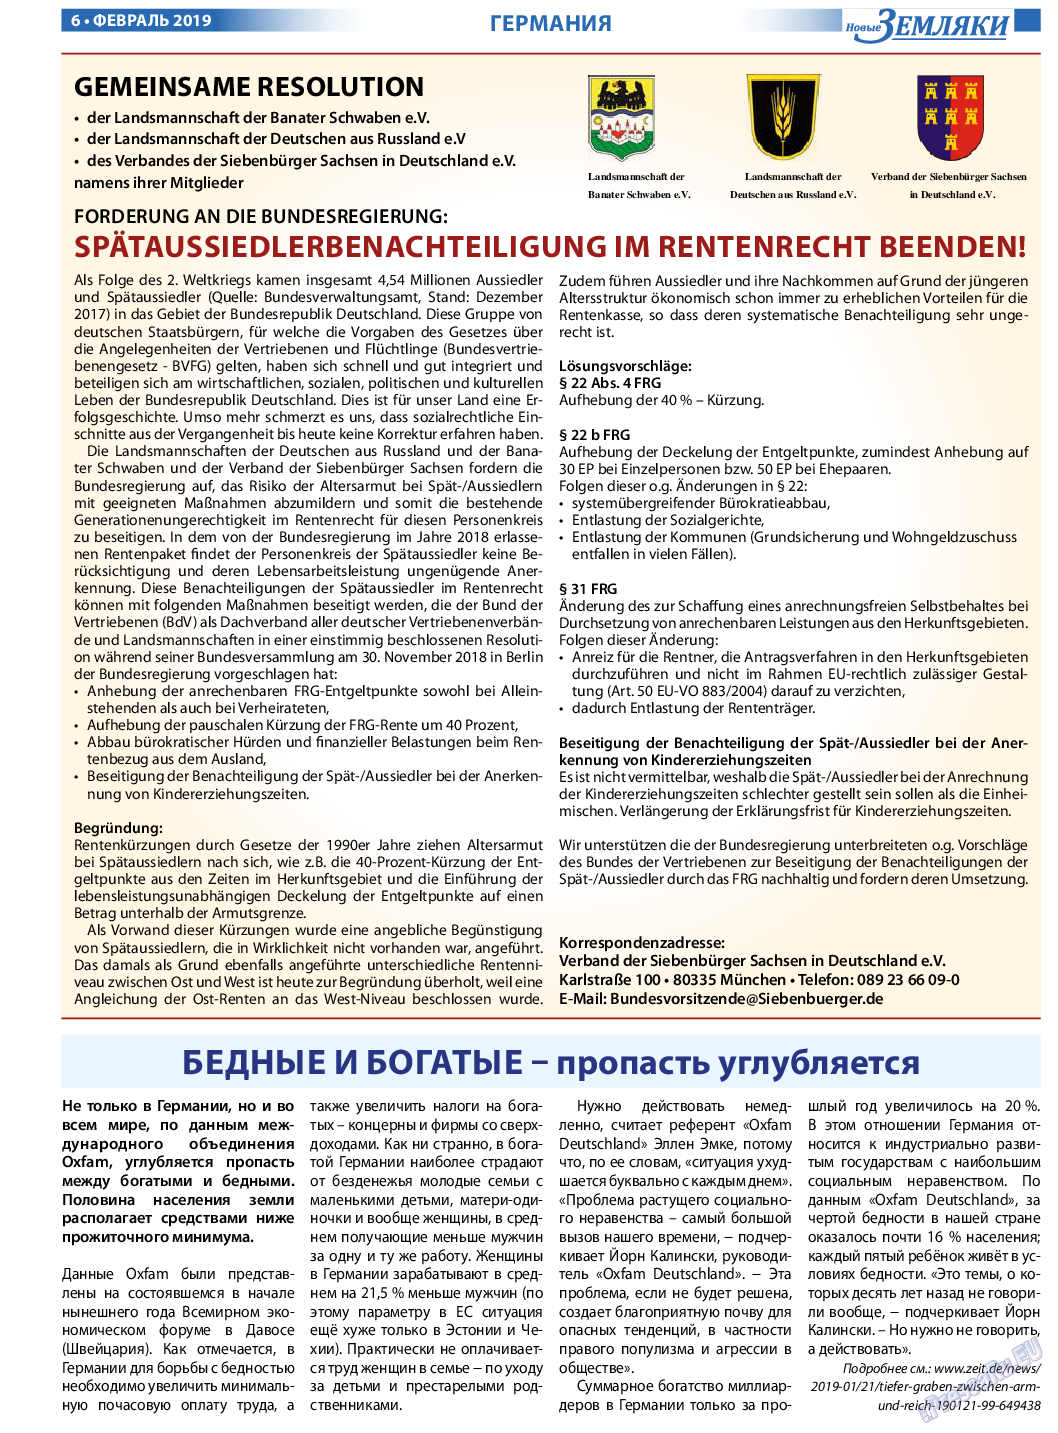 Новые Земляки, газета. 2019 №2 стр.6